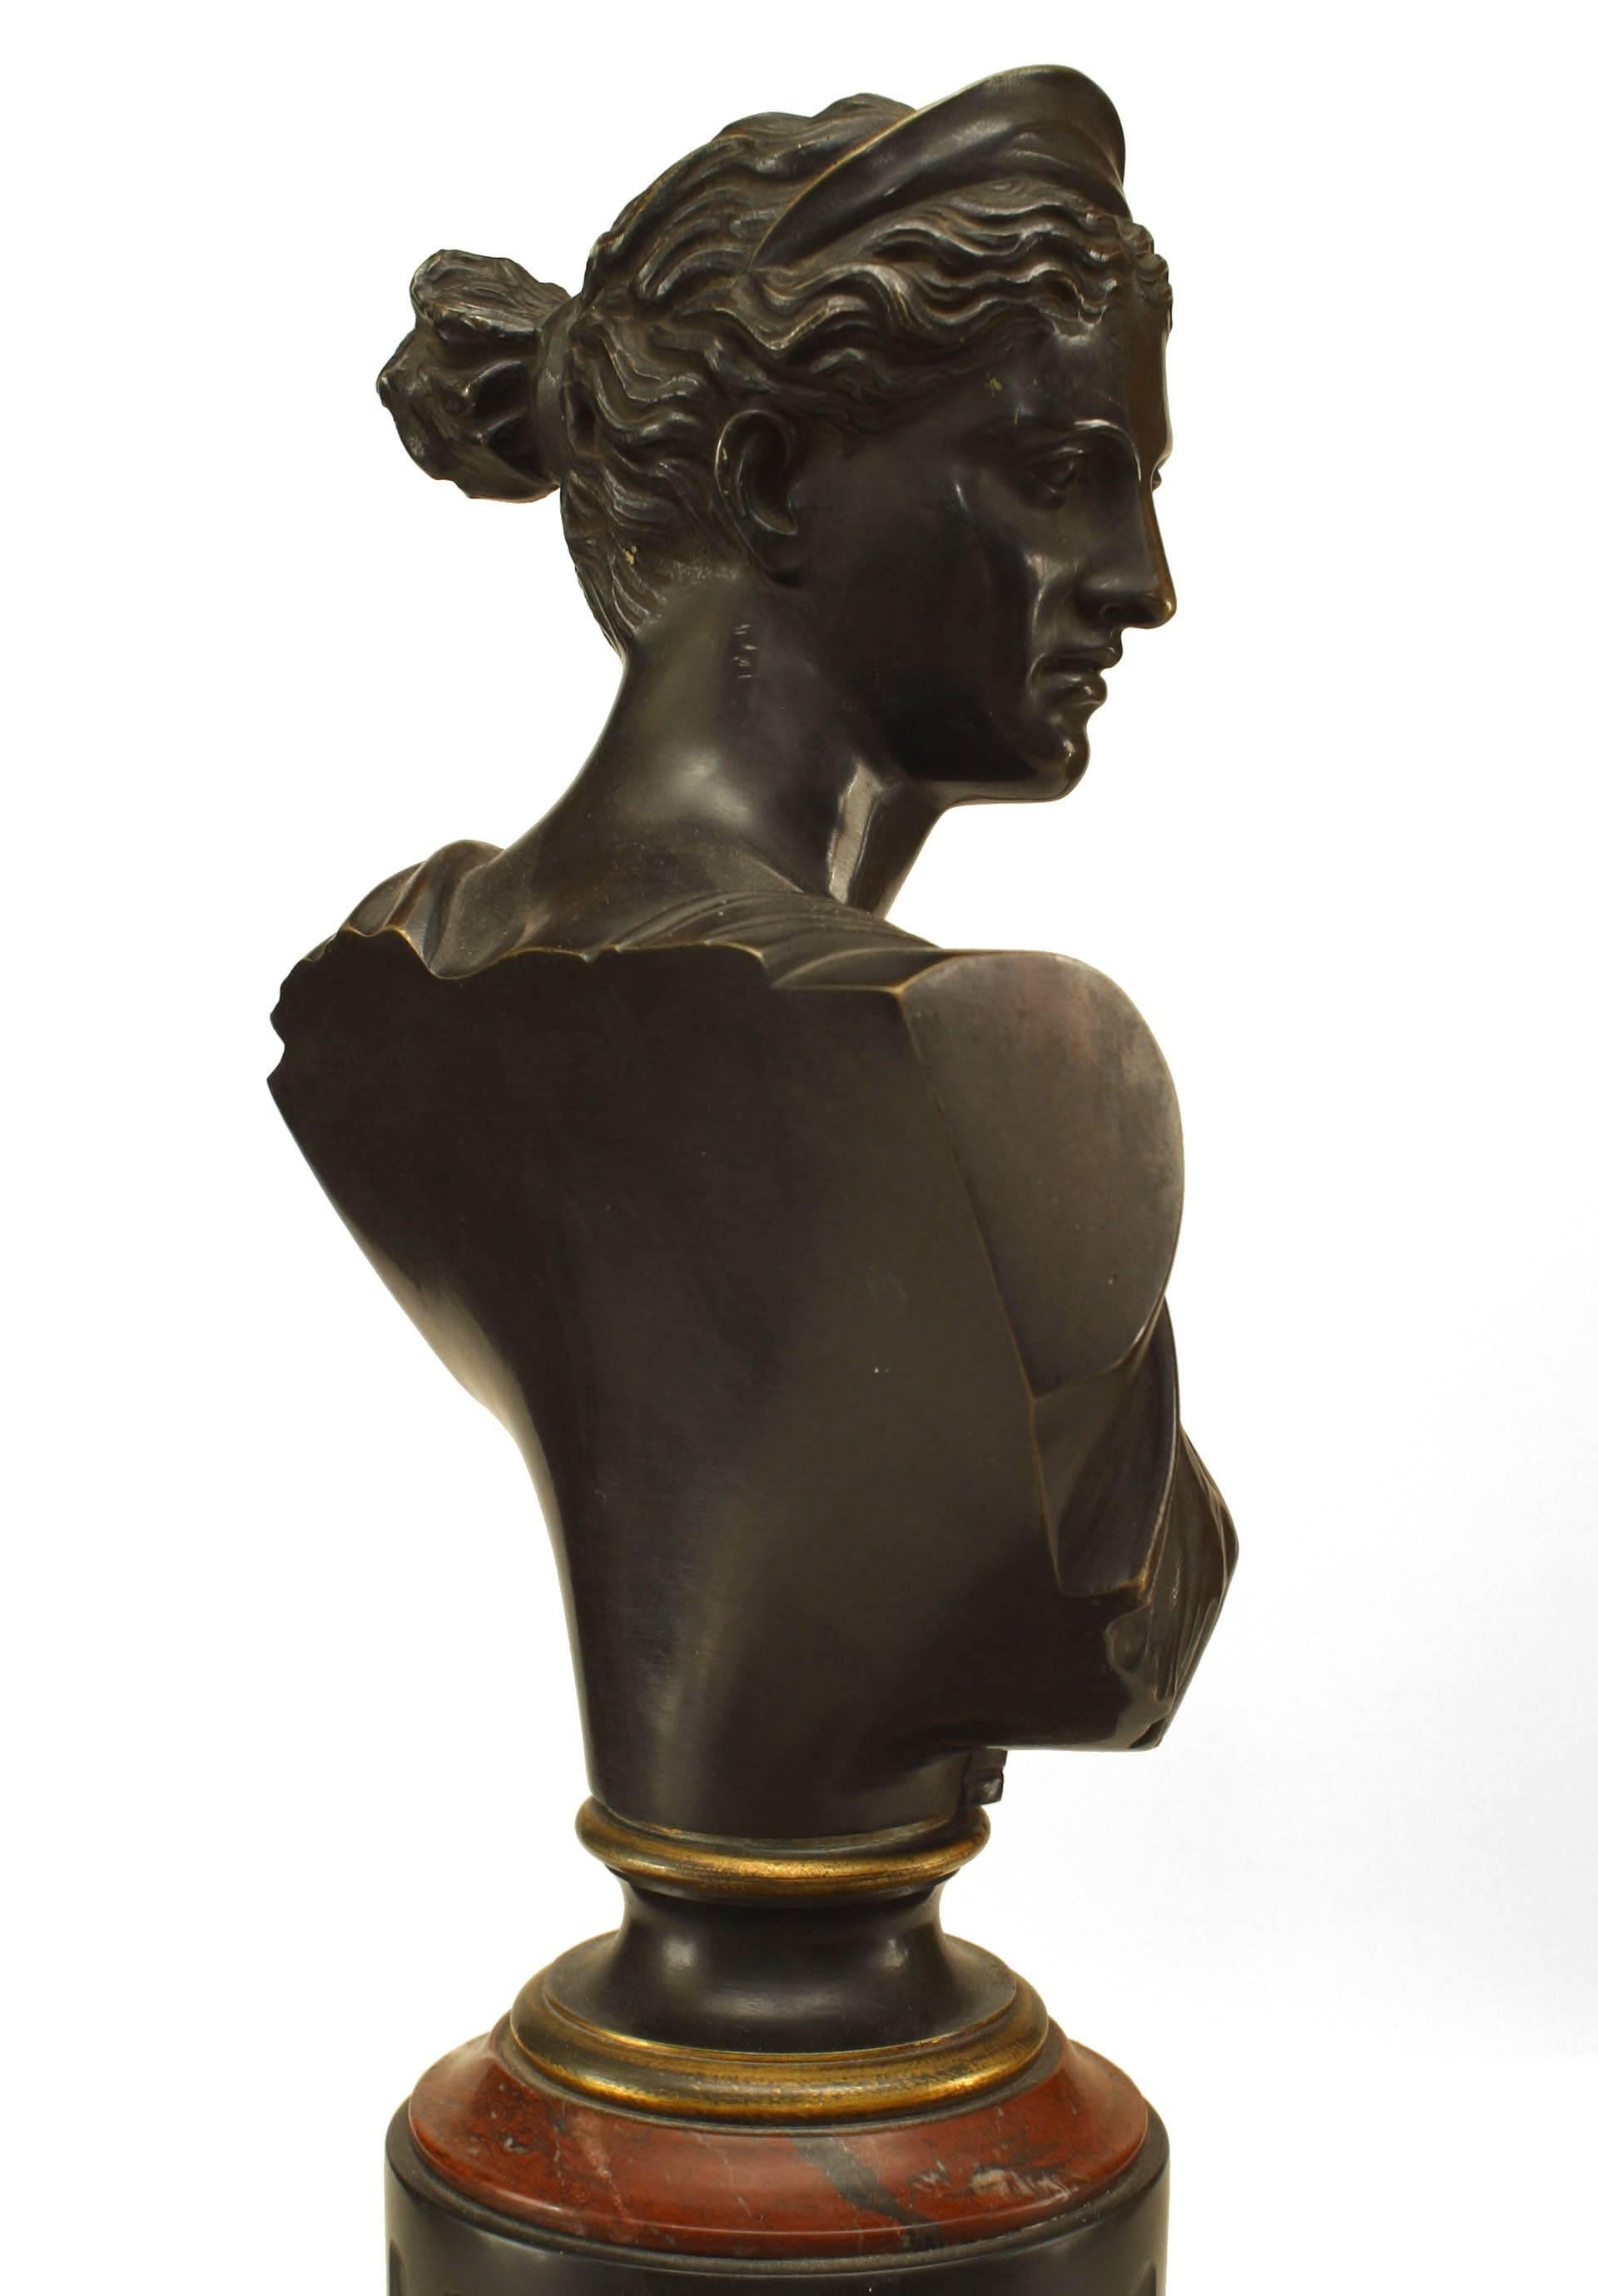 Paire de bustes d'Apollon et de Diane en bronze de style victorien français, montés sur une base carrée en marbre noir sous une colonne cannelée avec garniture en marbre rouge
